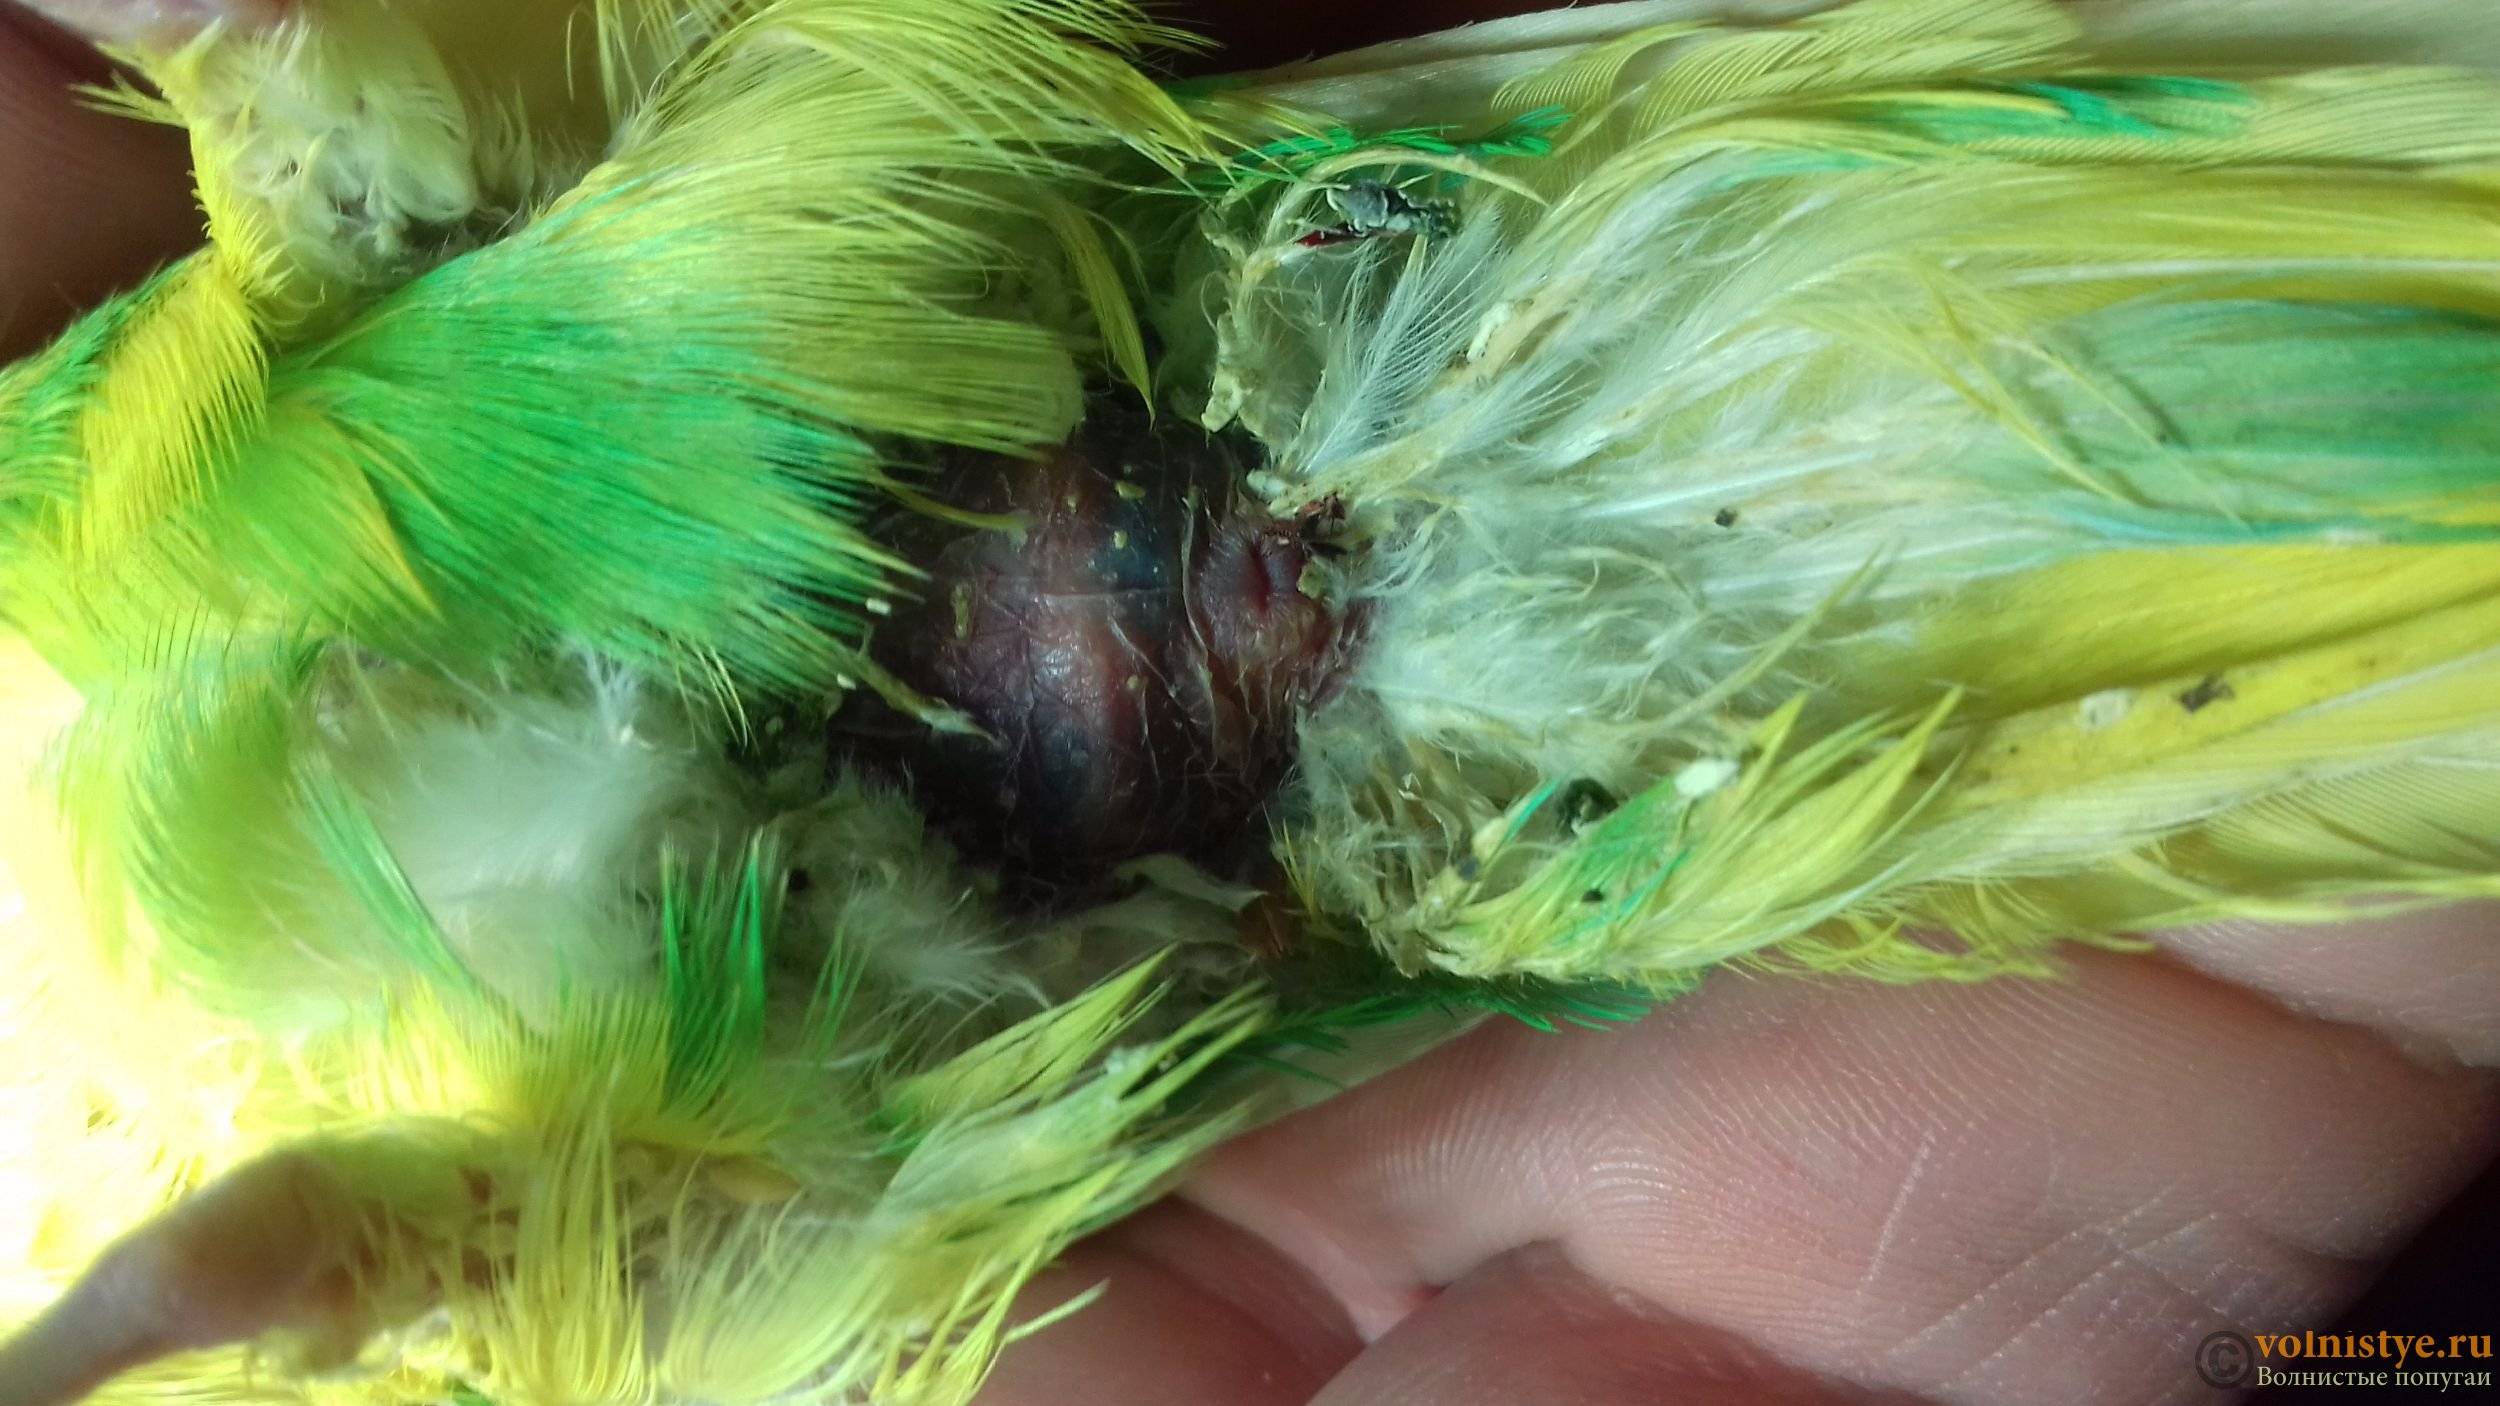 Болезни и травмы лап у попугая: горячие или холодные лапки, переломы, вывихи, воспаления, шелушения